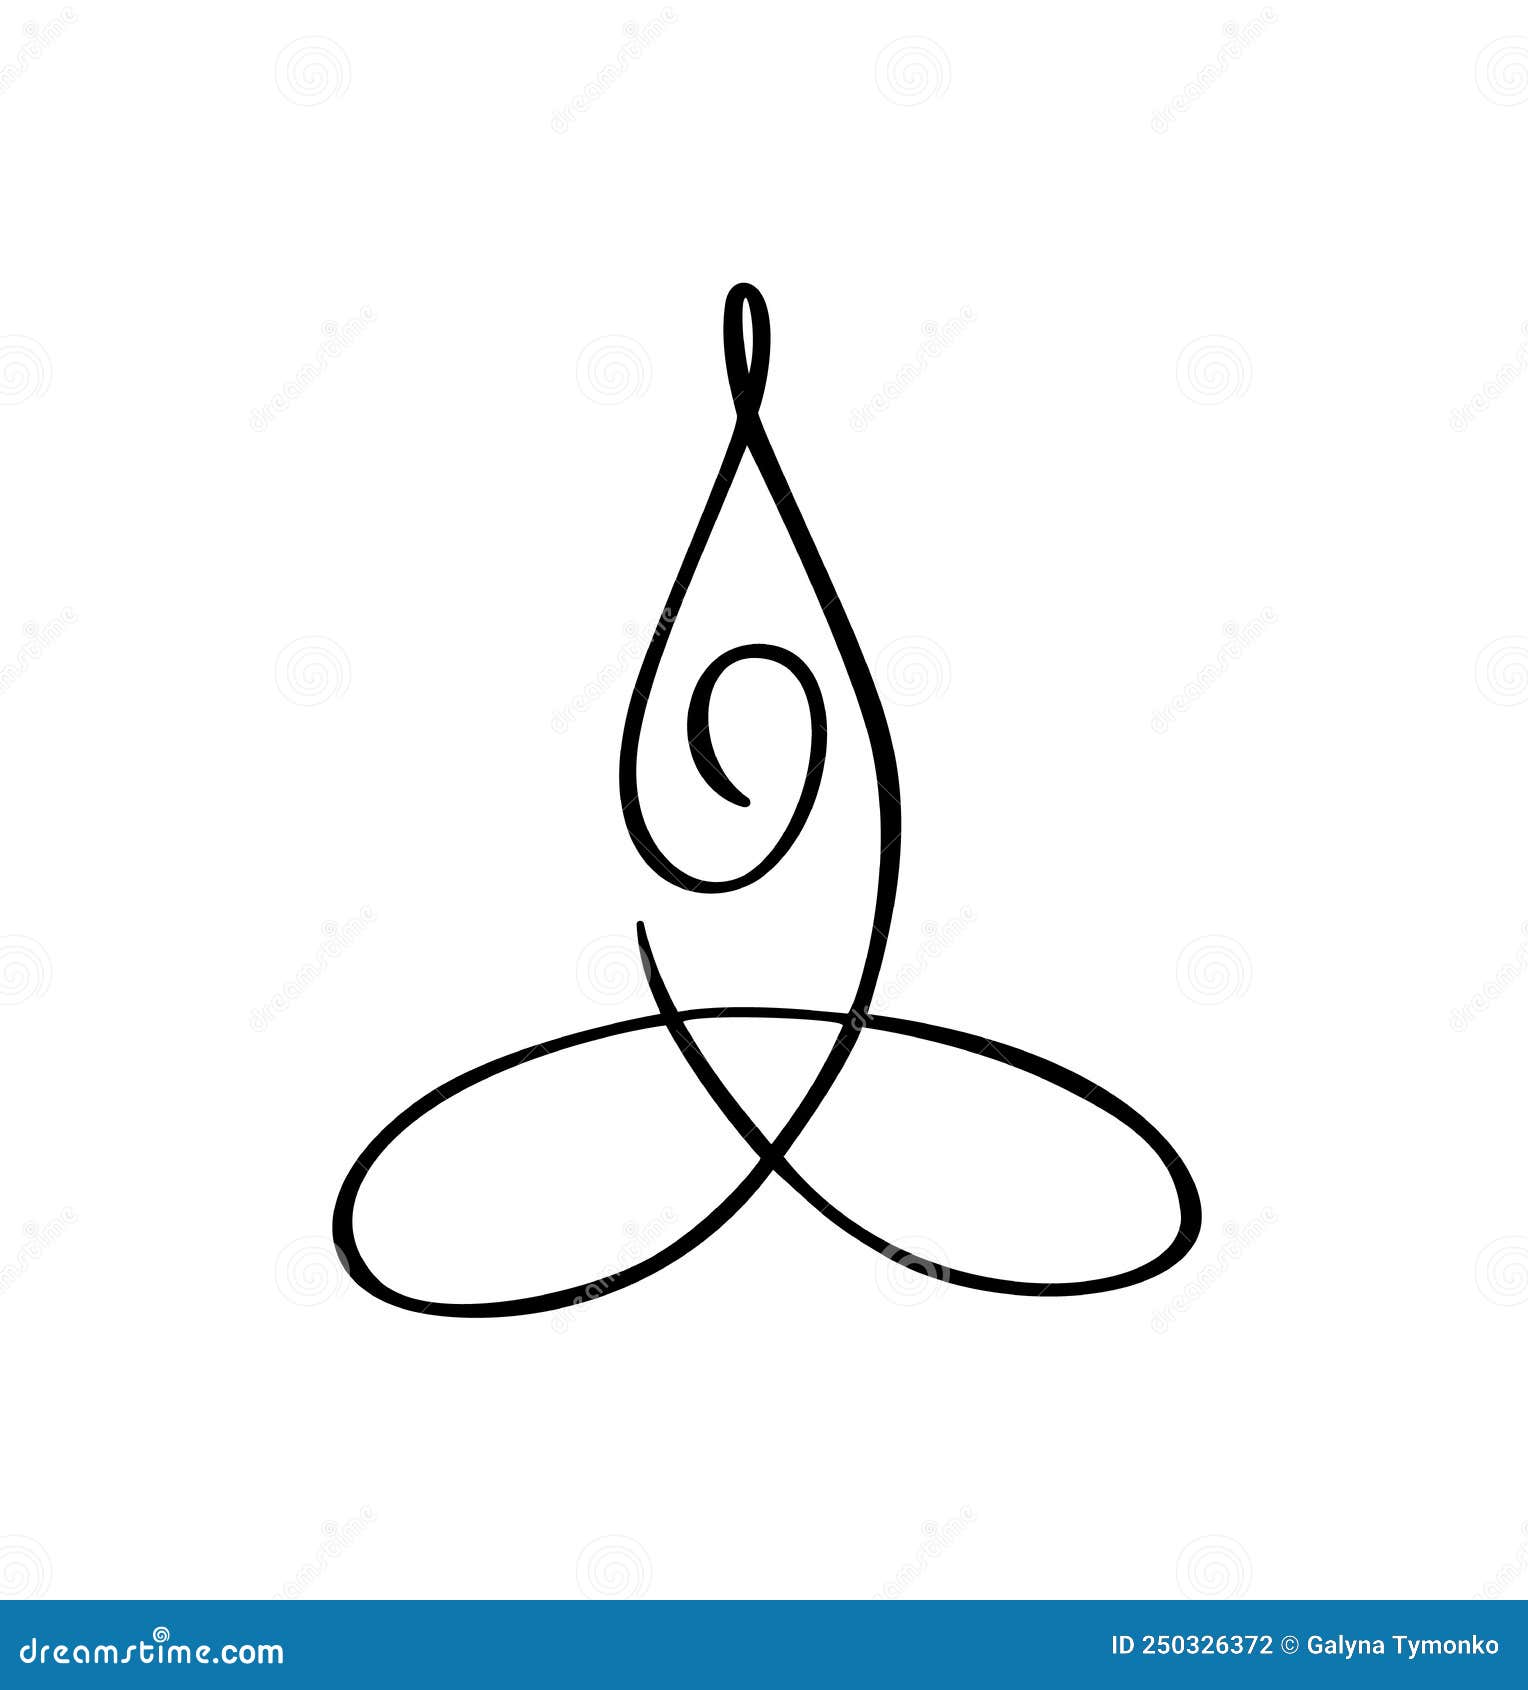 Conceito Do Logotipo Vetor Do ícone De Pose Yoga Lotus. Símbolo De